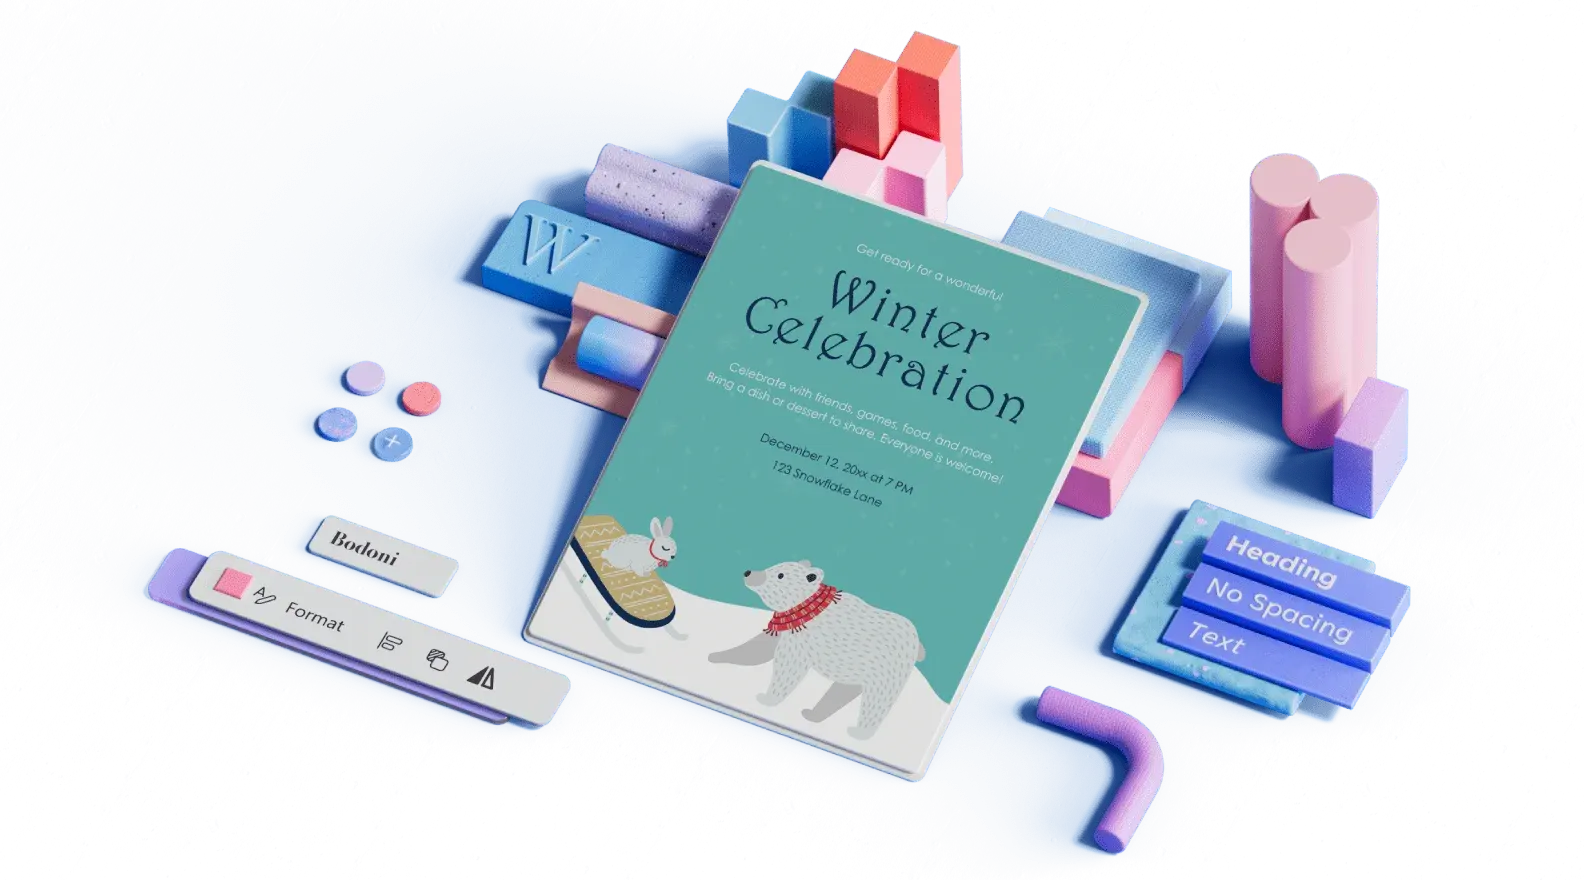 Πρότυπο ανακοίνωσης χειμερινής γιορτής που περιβάλλεται από 3D εικονογραφημένα στοιχεία σχεδίασης